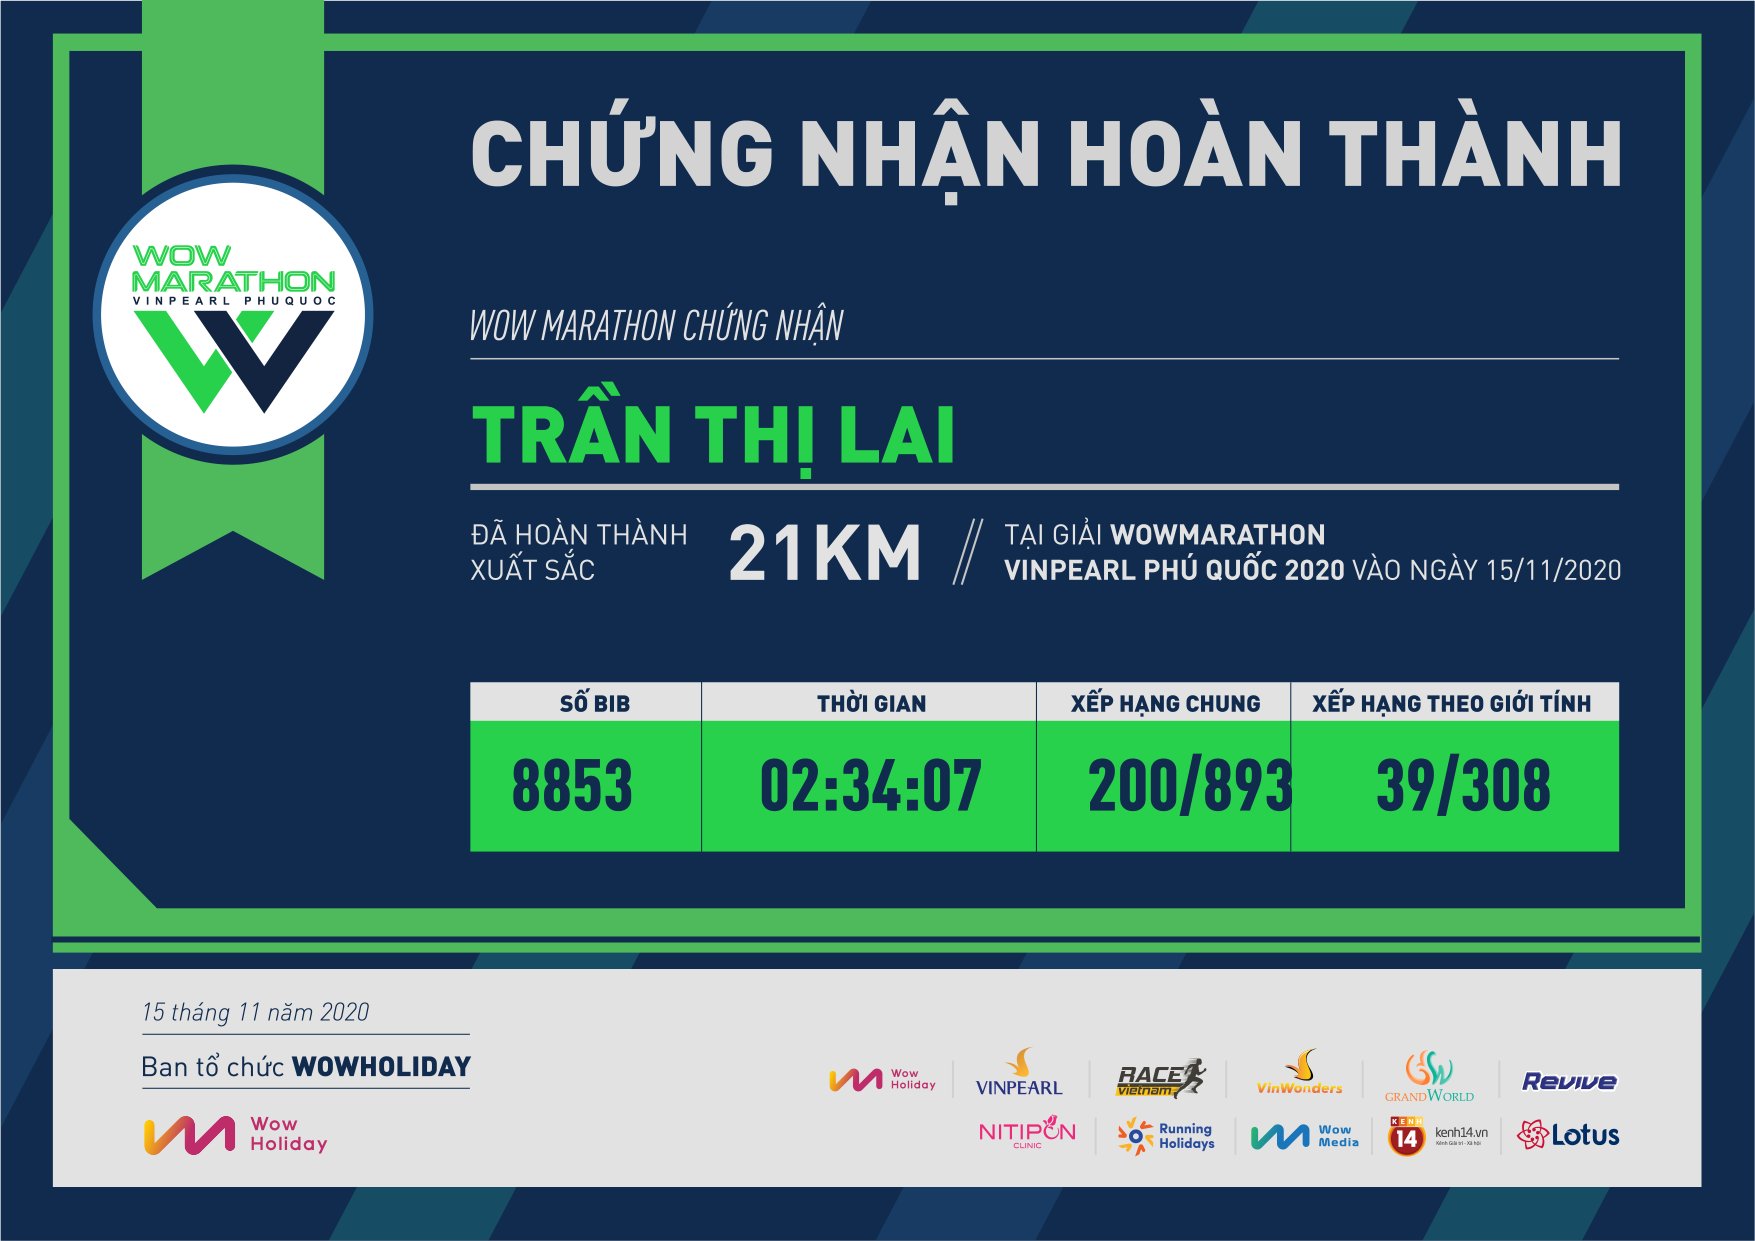 8853 - Trần Thị Lai